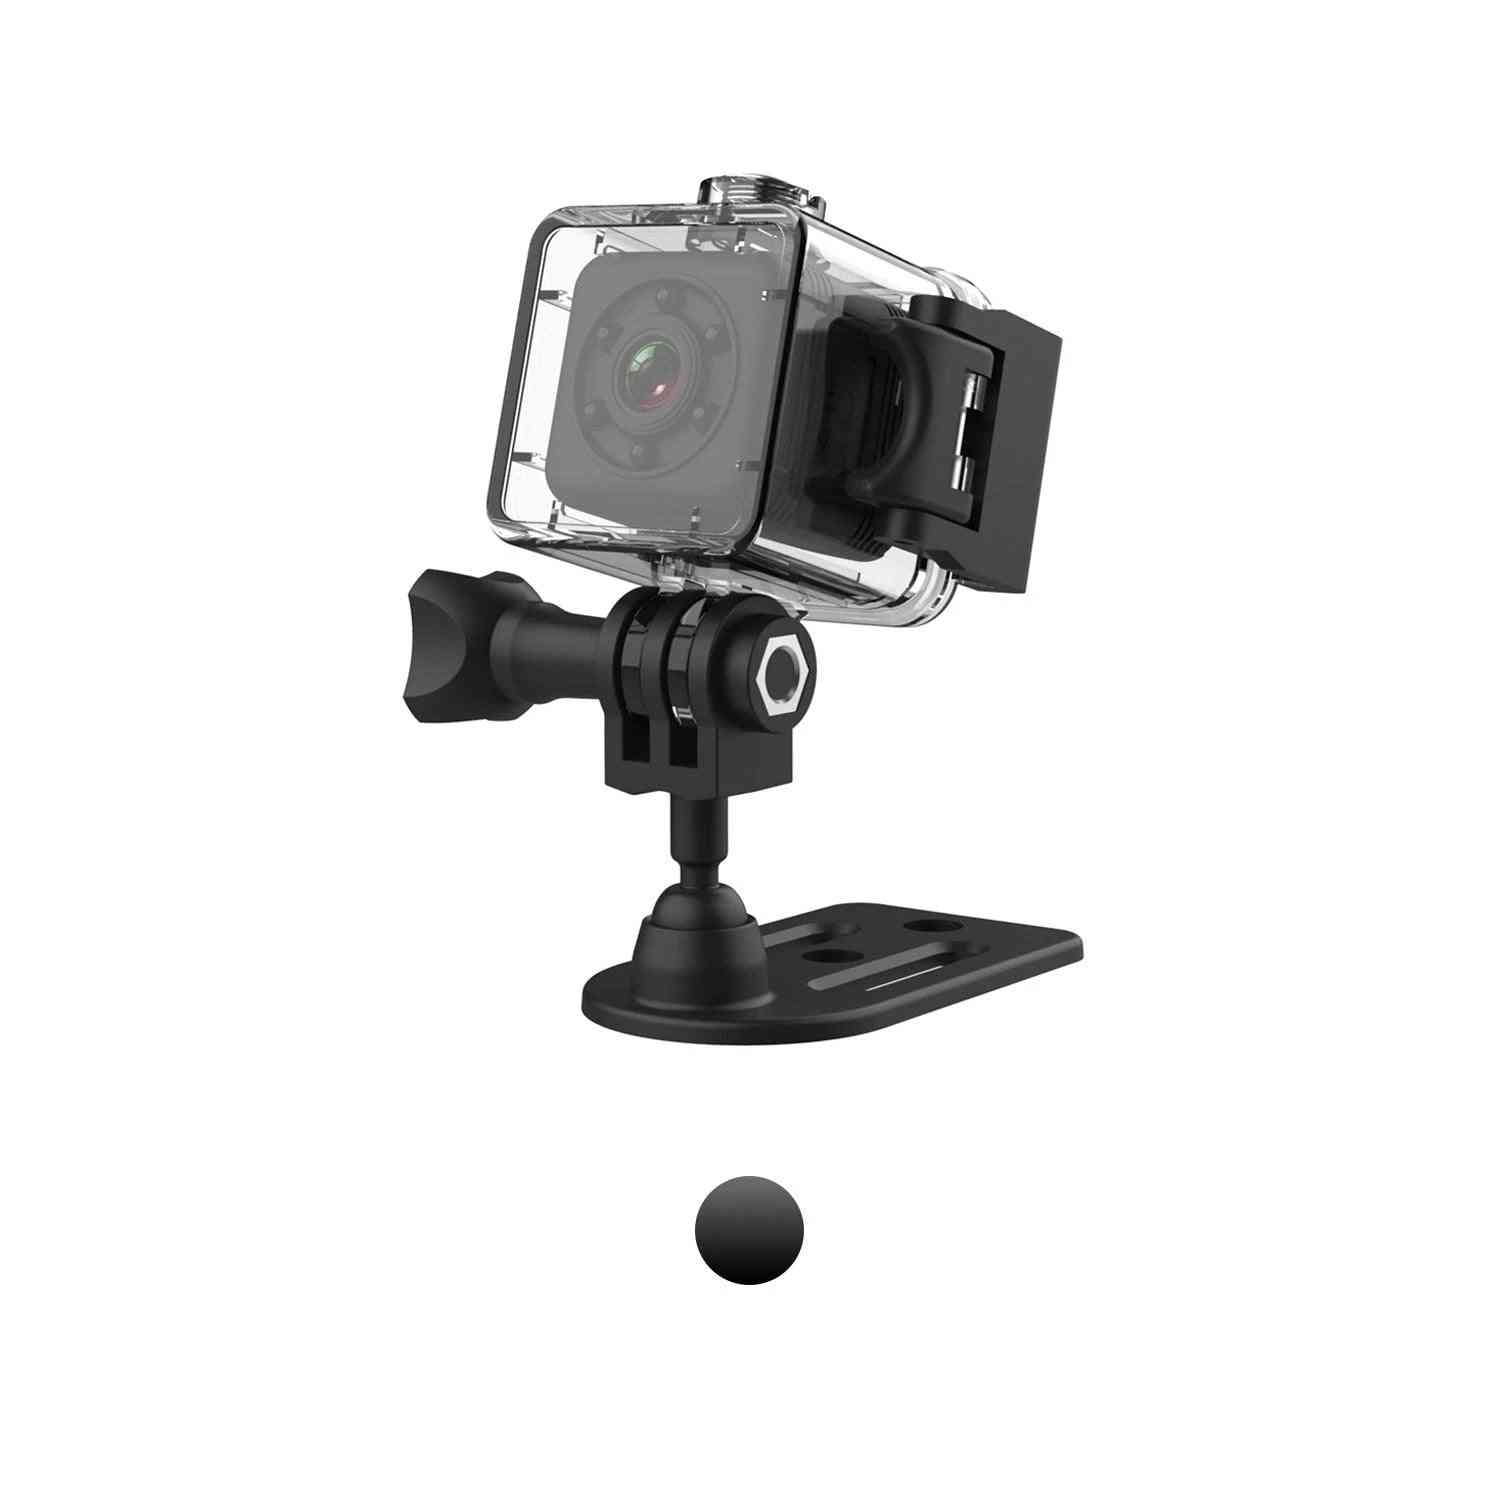 Sportowa mini kamera ip SQ29 do noktowizora, wodoodporna kamera ruchu, mikro kamera dvr sport - sq11 czarna